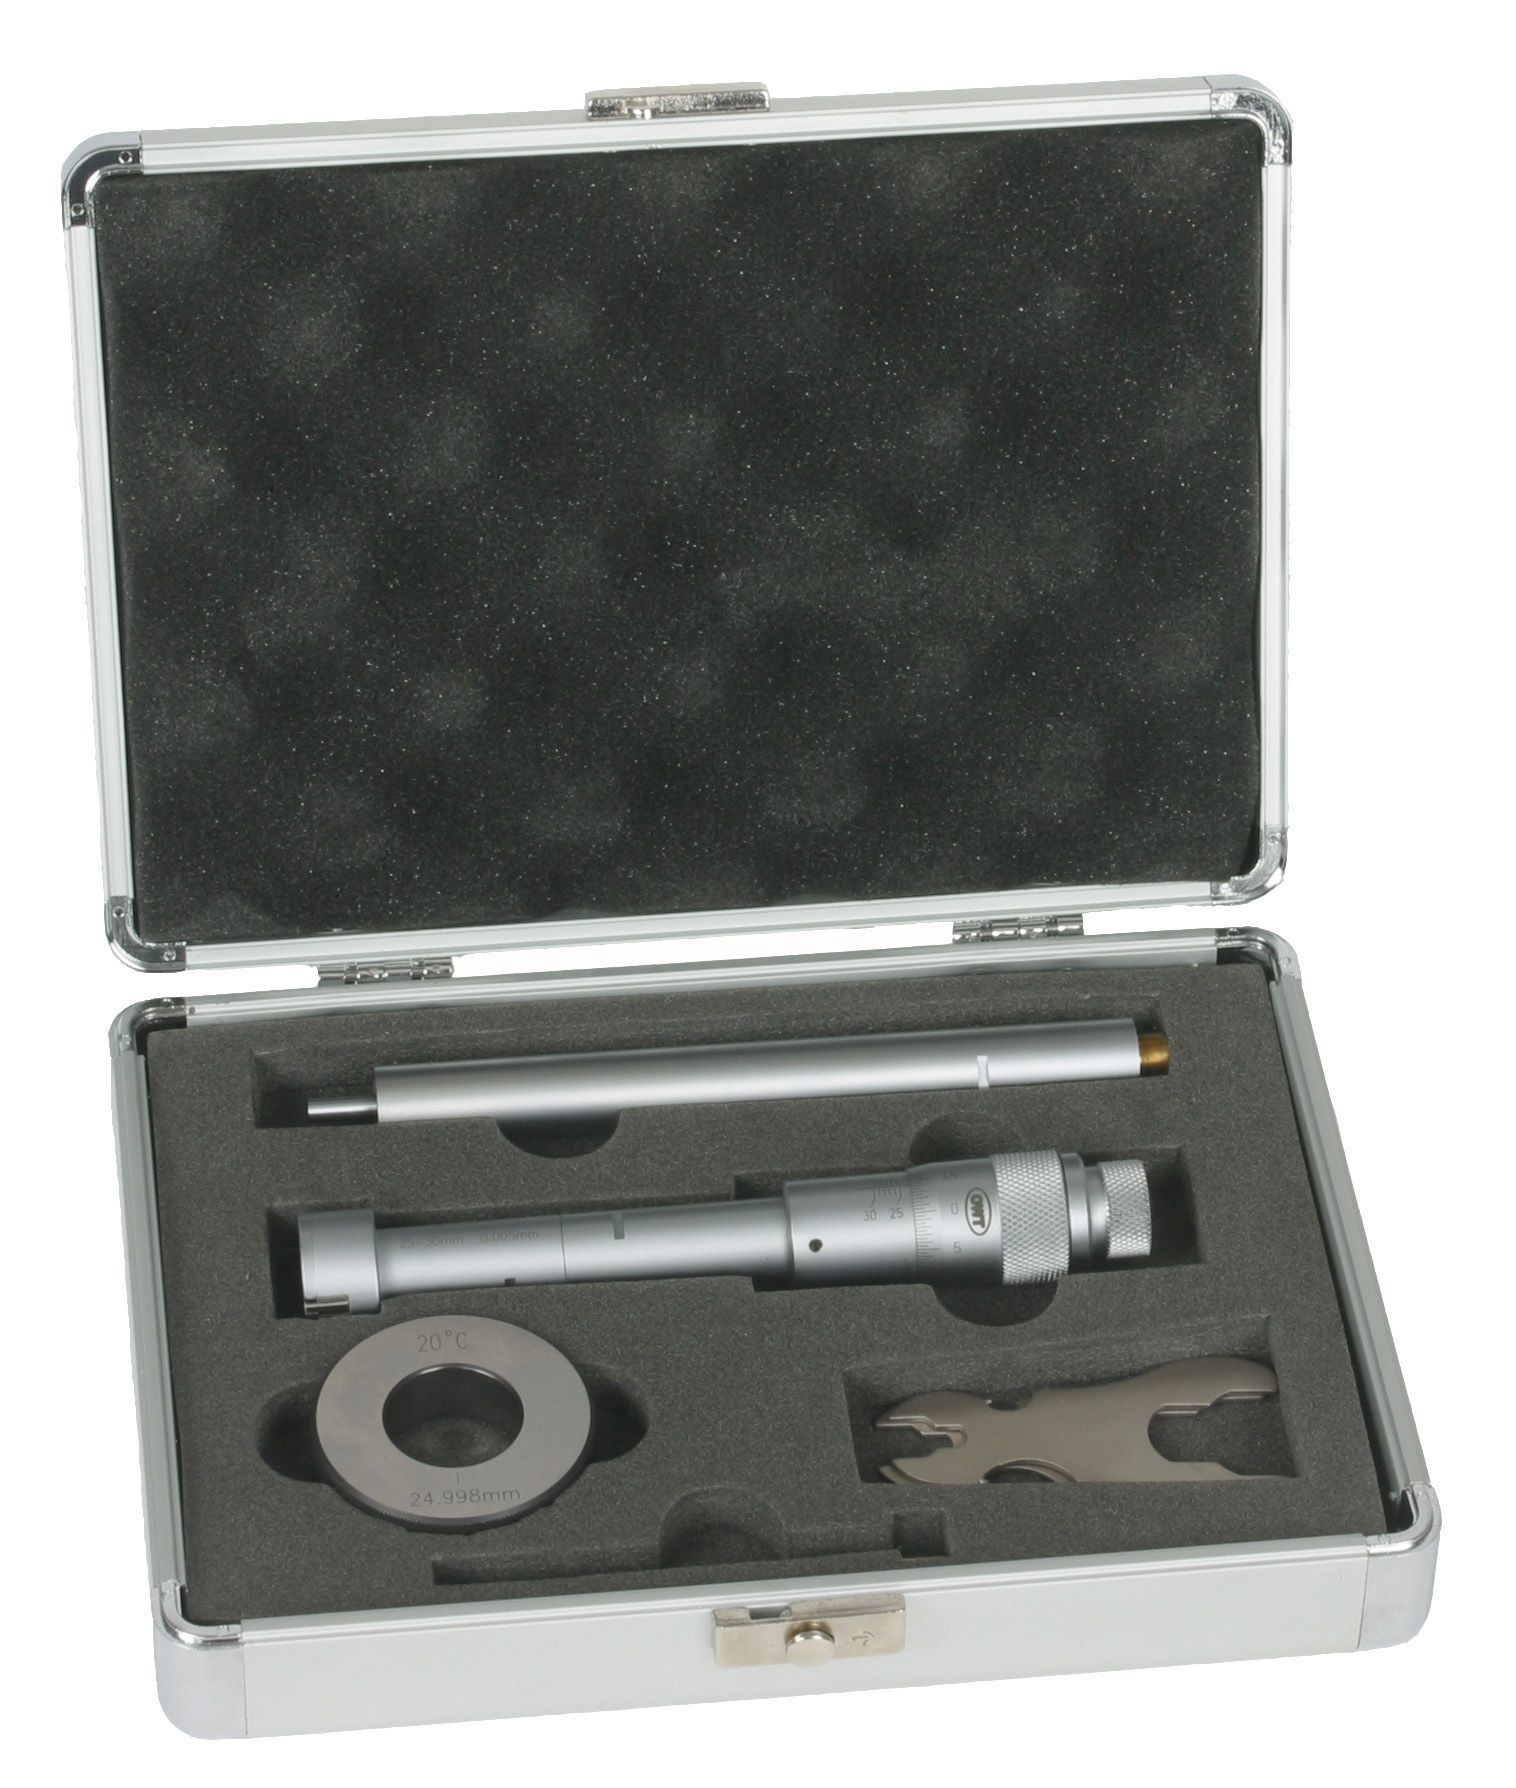 Dreipunkt-Innenmessschraube 87-100 mm DIN 853